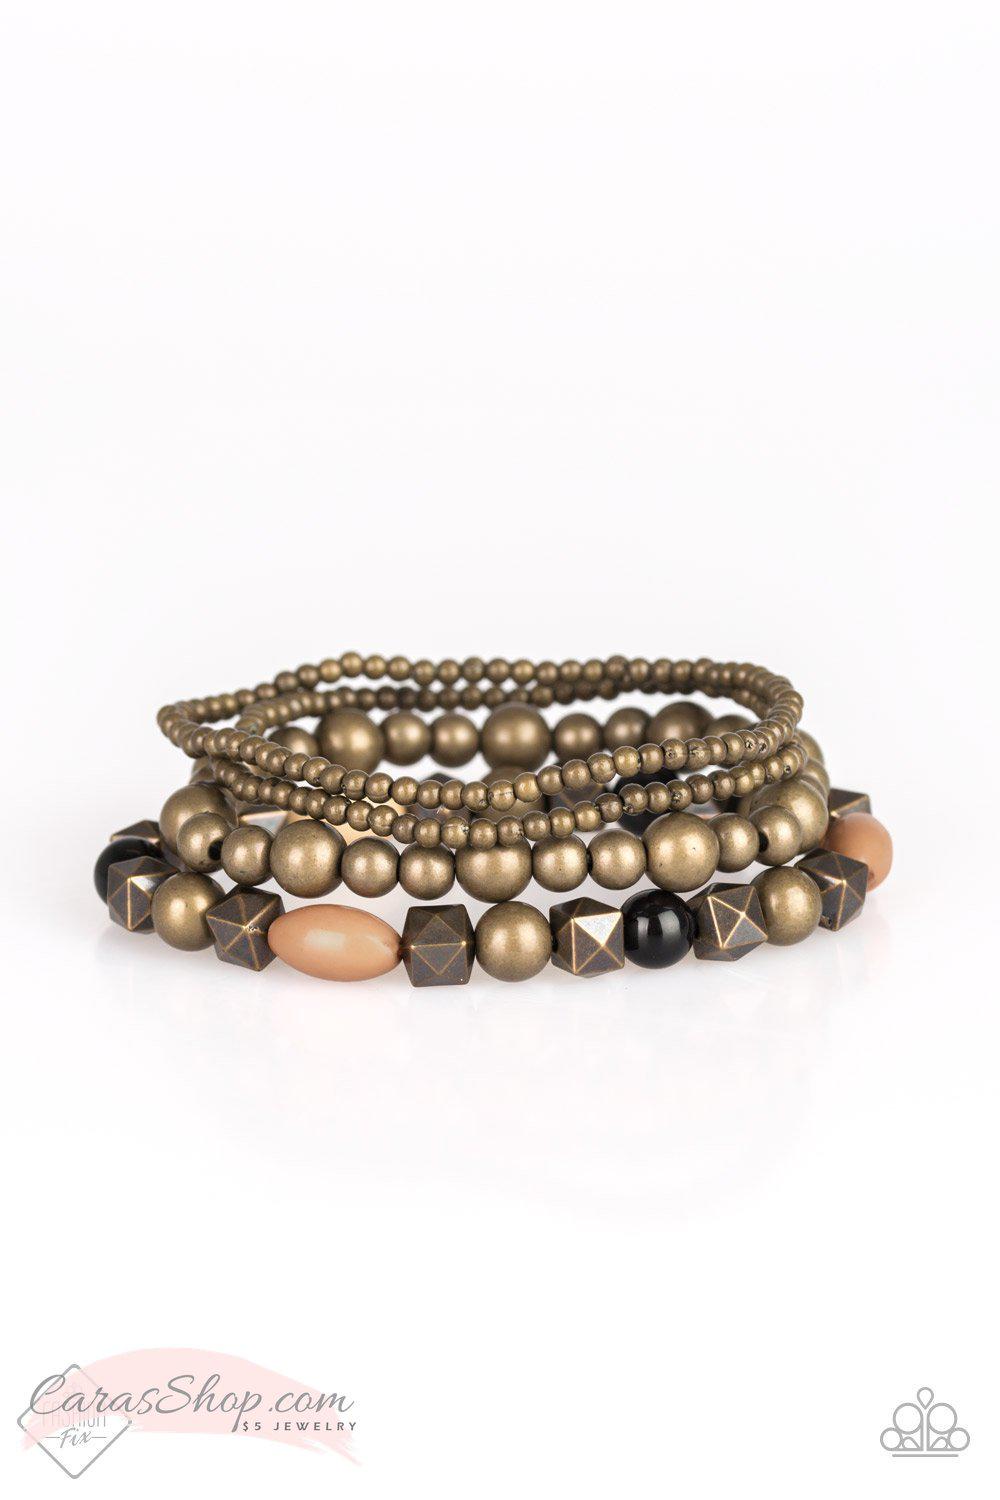 Babe-alicious Brass Stretch Bracelet Set - Paparazzi Accessories-CarasShop.com - $5 Jewelry by Cara Jewels